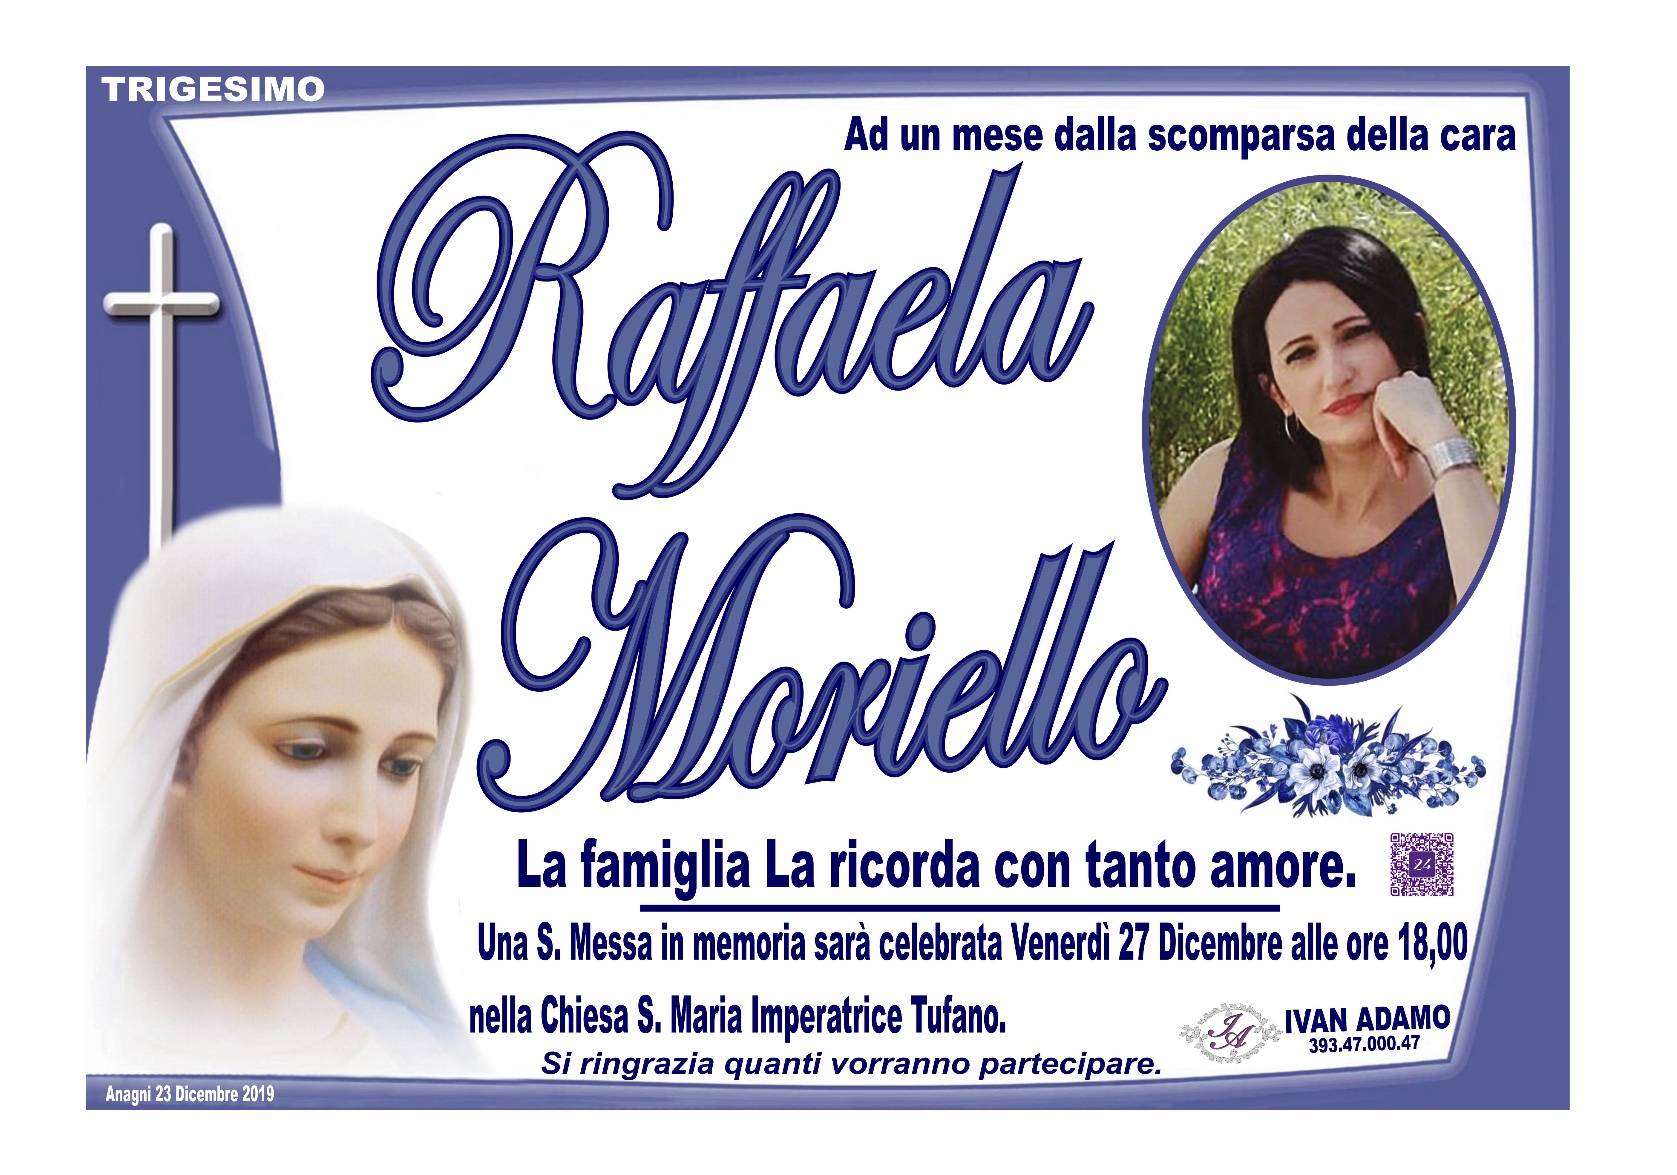 Raffaela Moriello